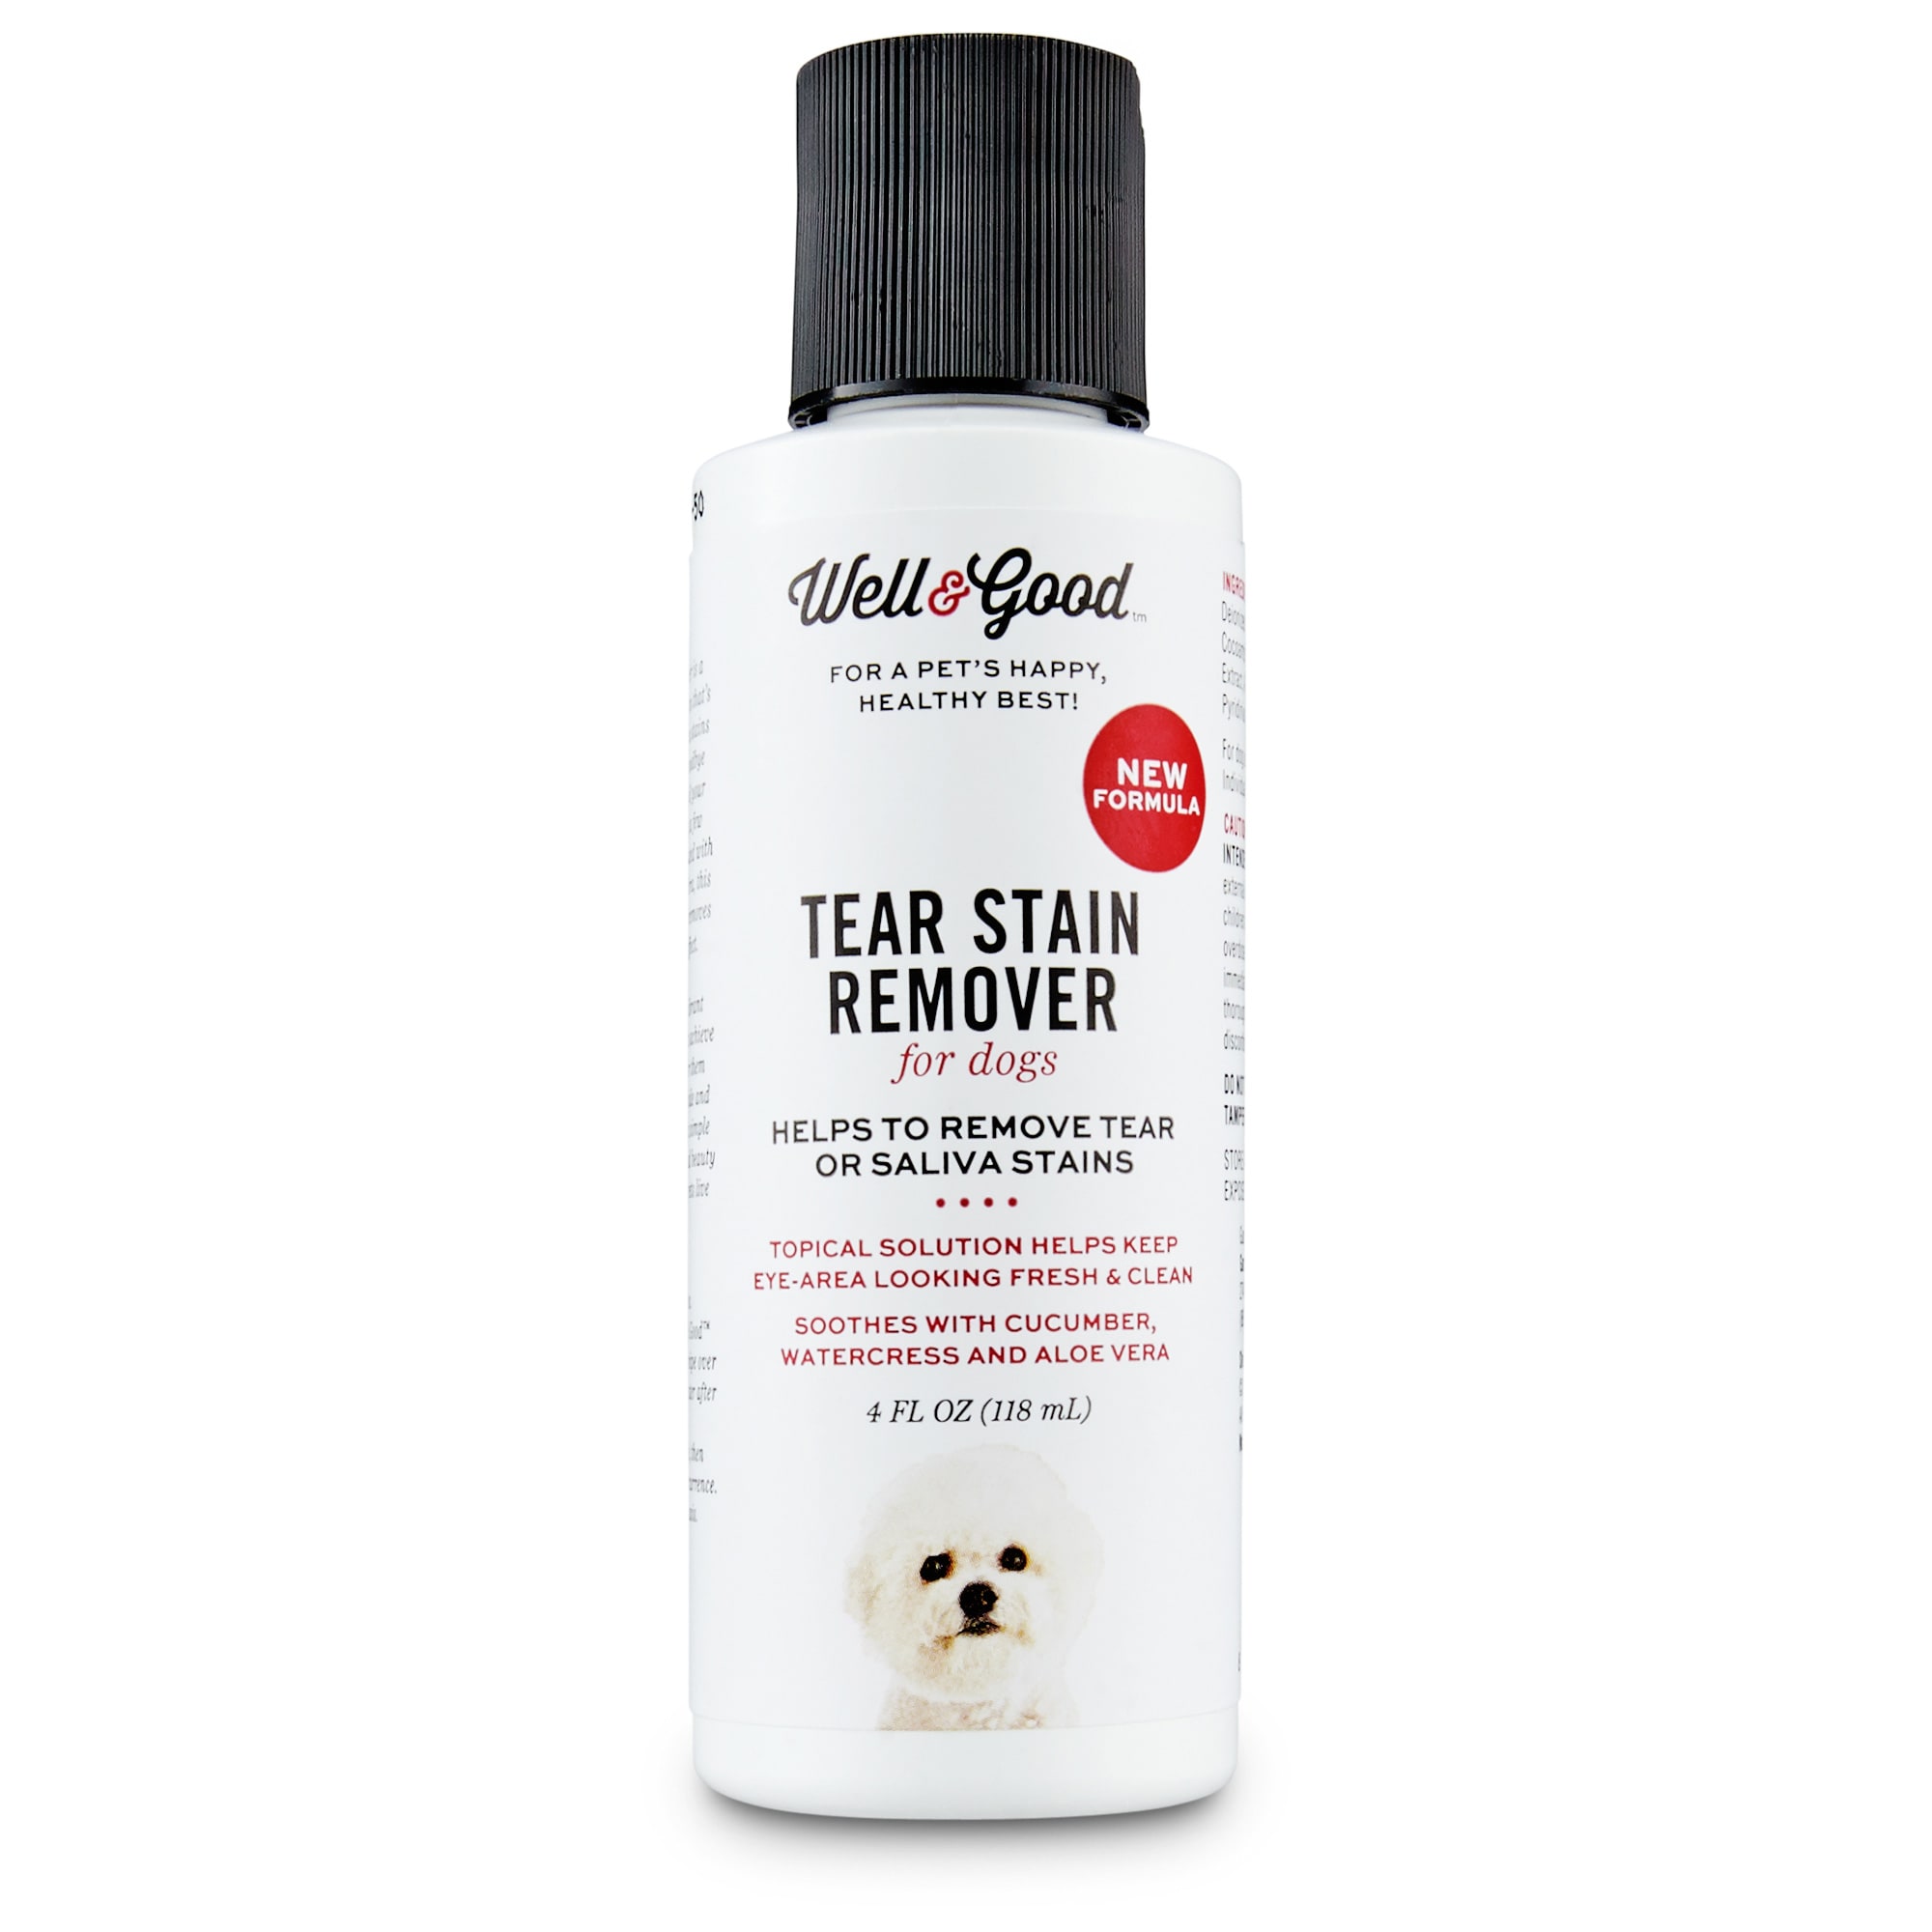 tear stain treatment